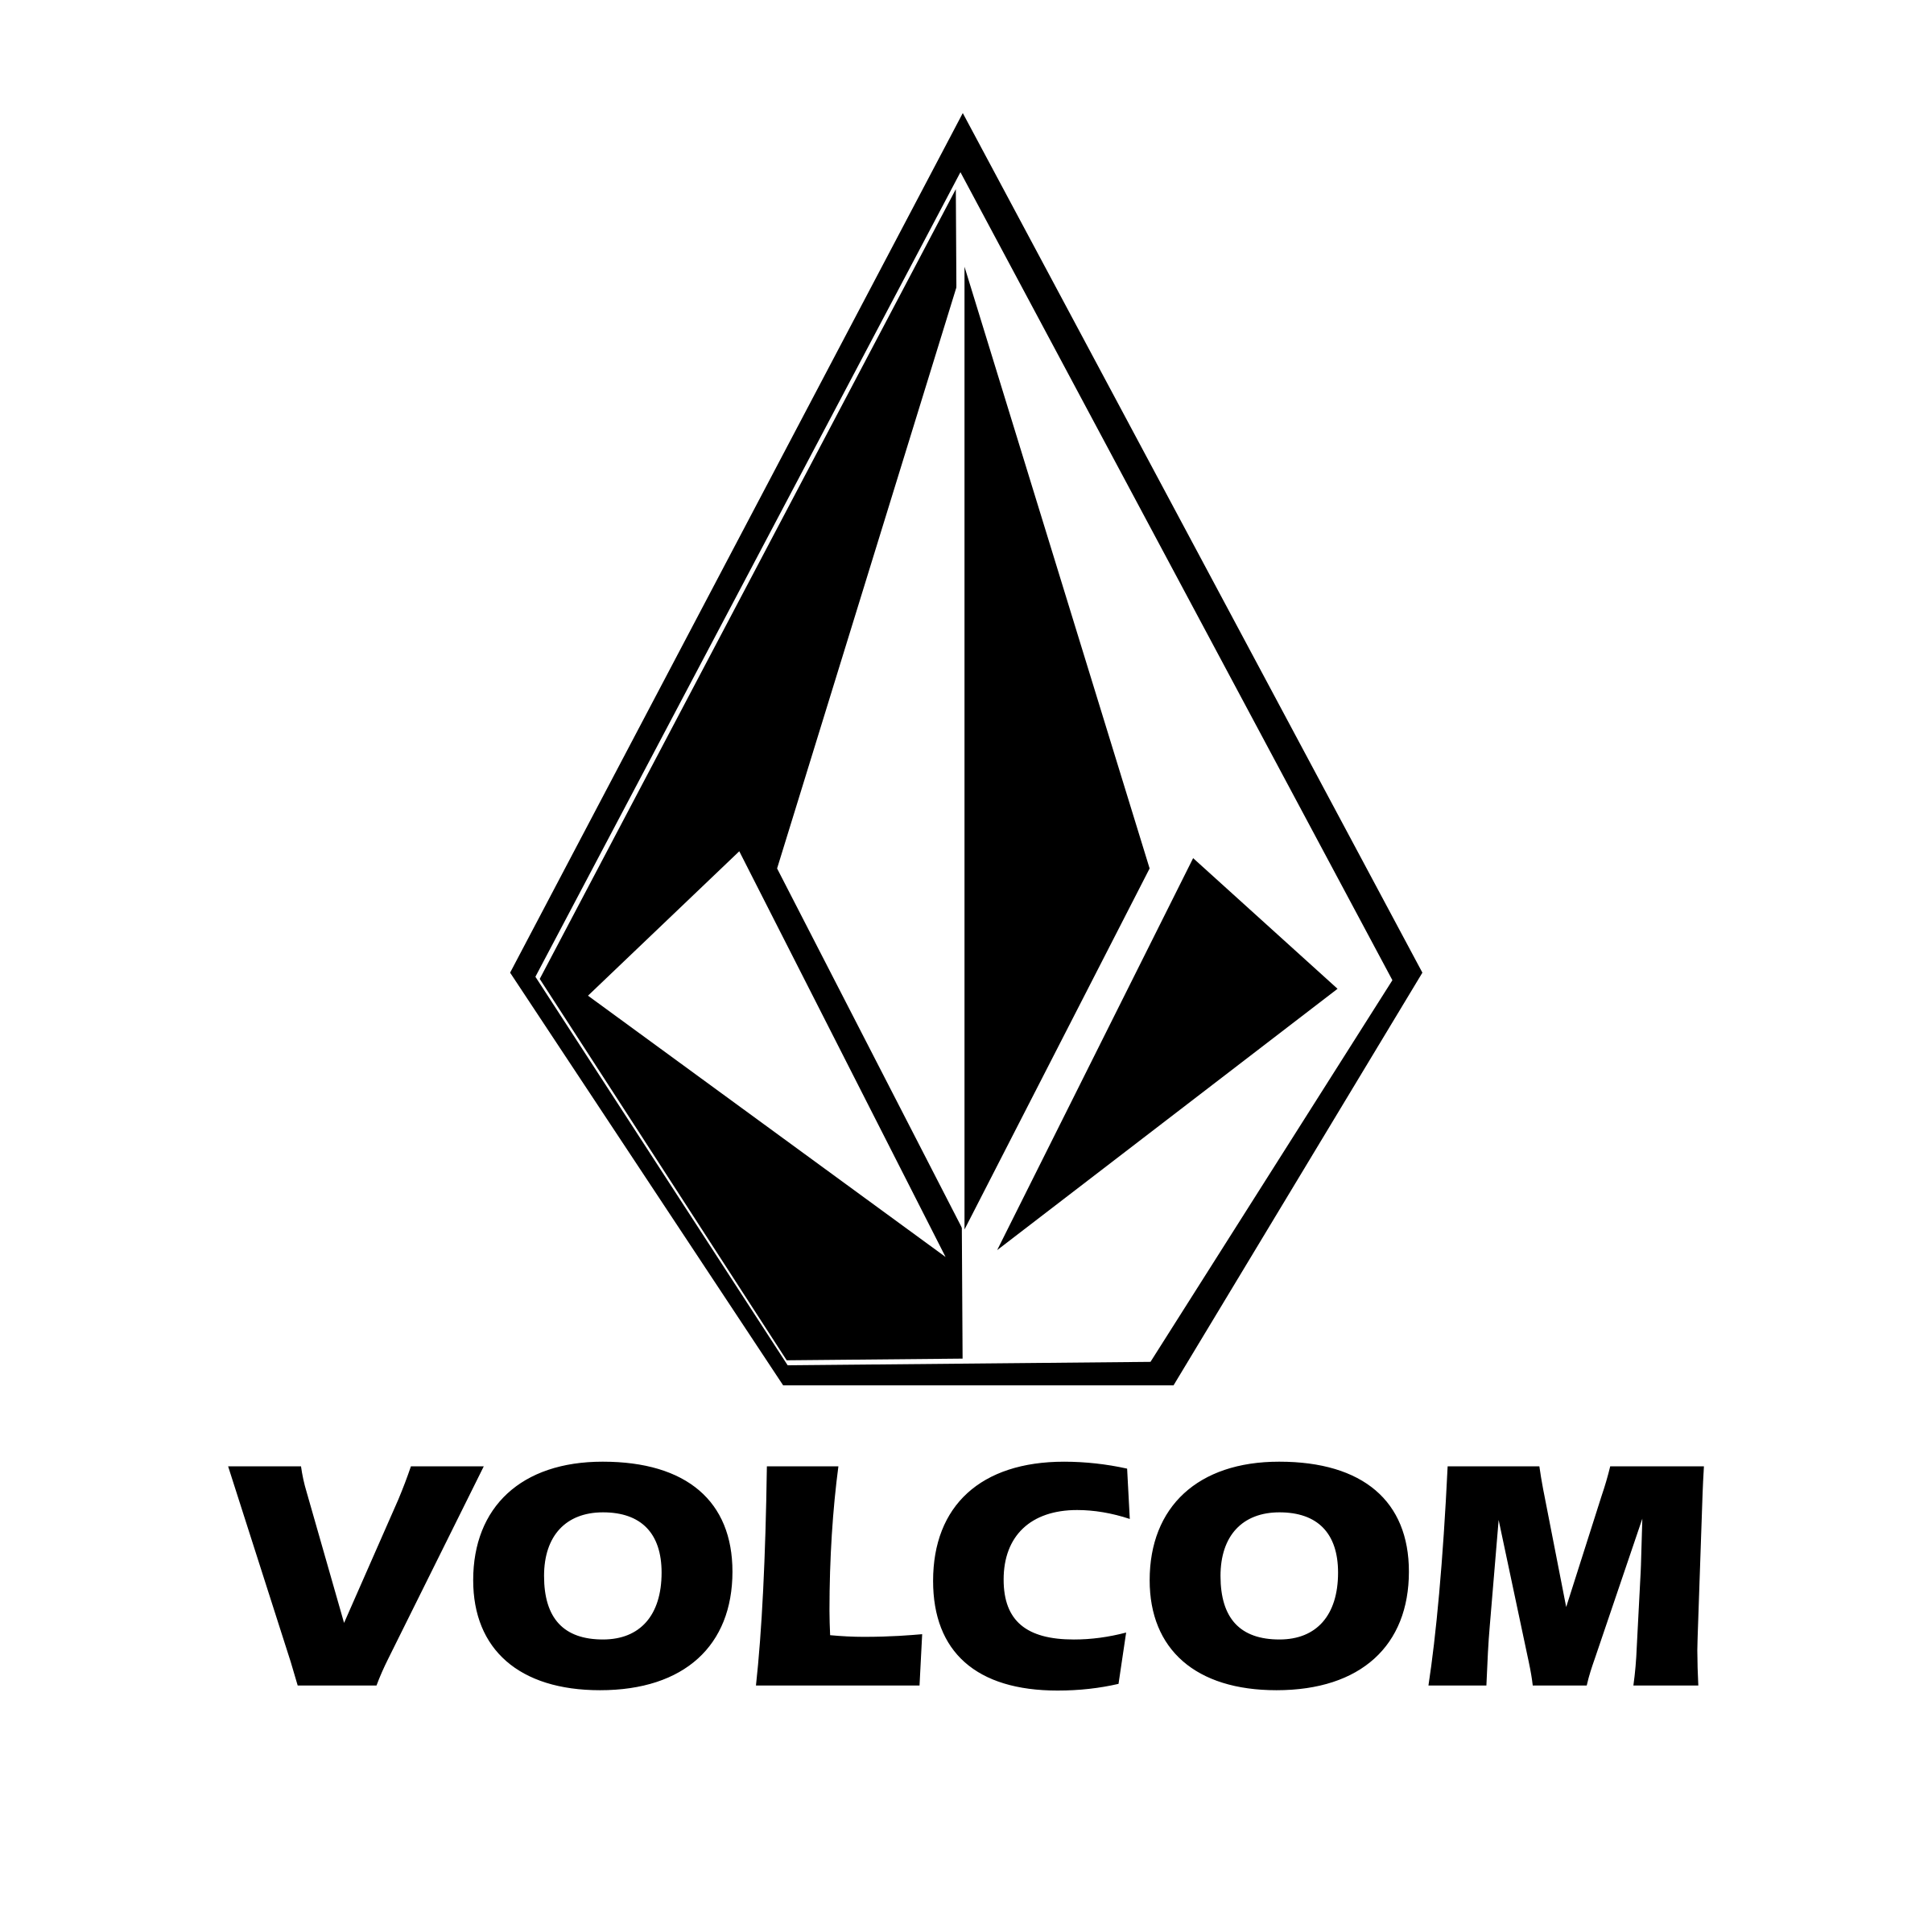 Volcom Logo - Volcom Logo PNG Transparent & SVG Vector - Freebie Supply